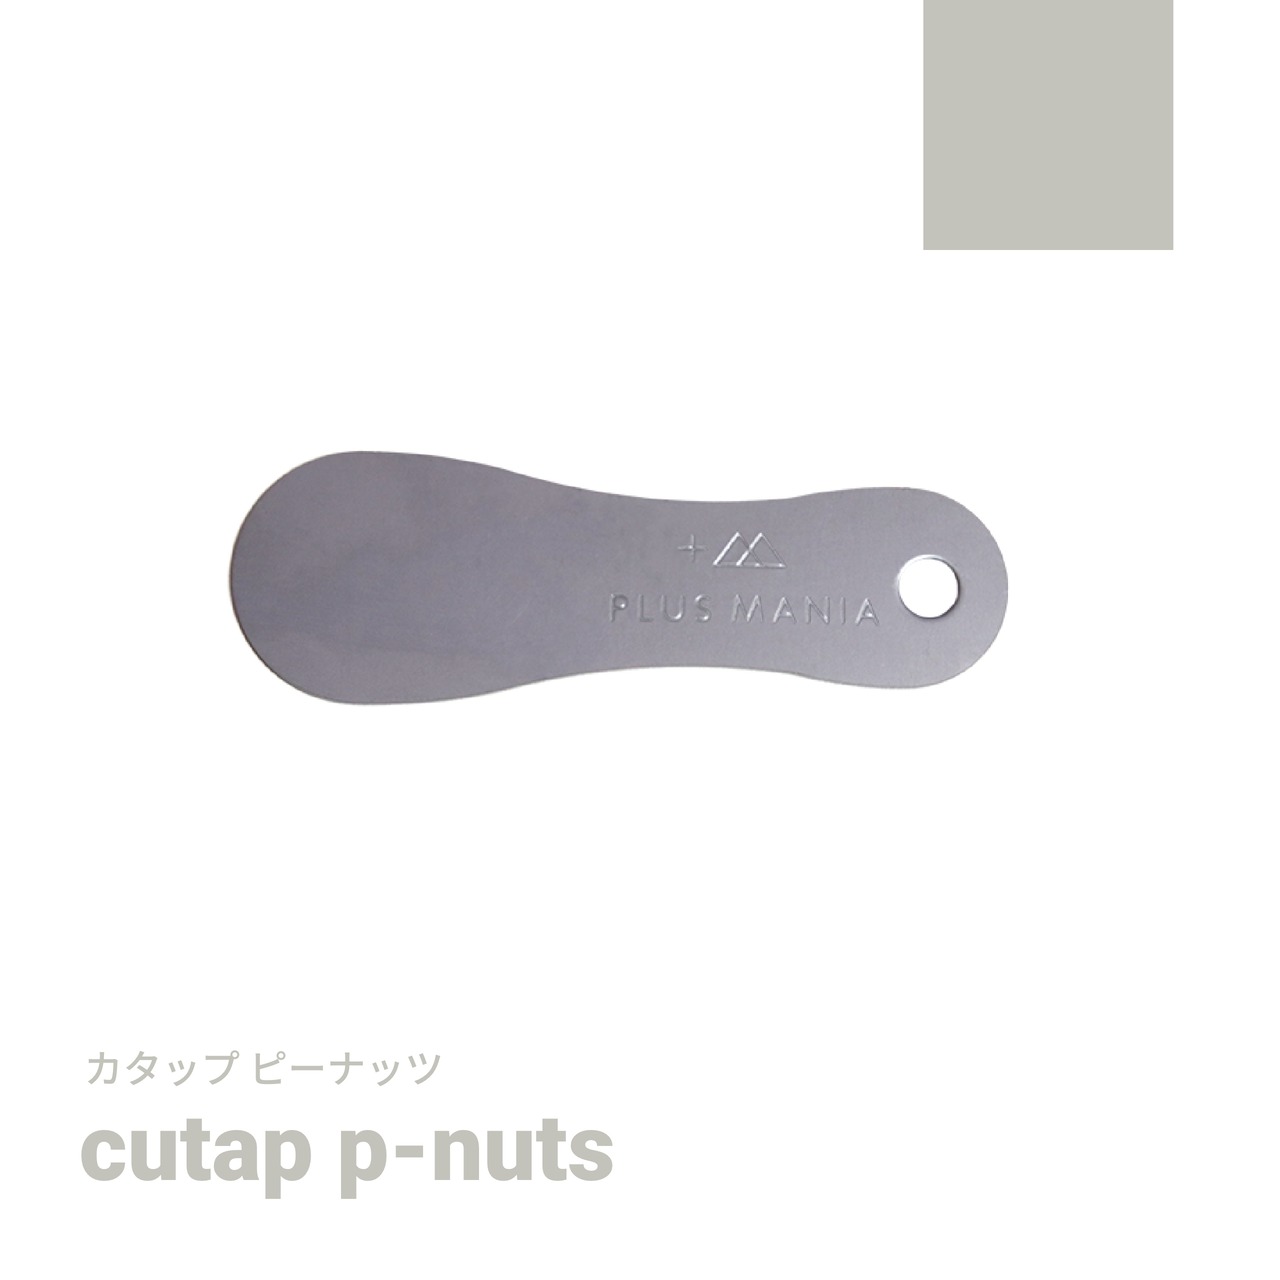 cutap p-nuts [カタップピーナッツ]